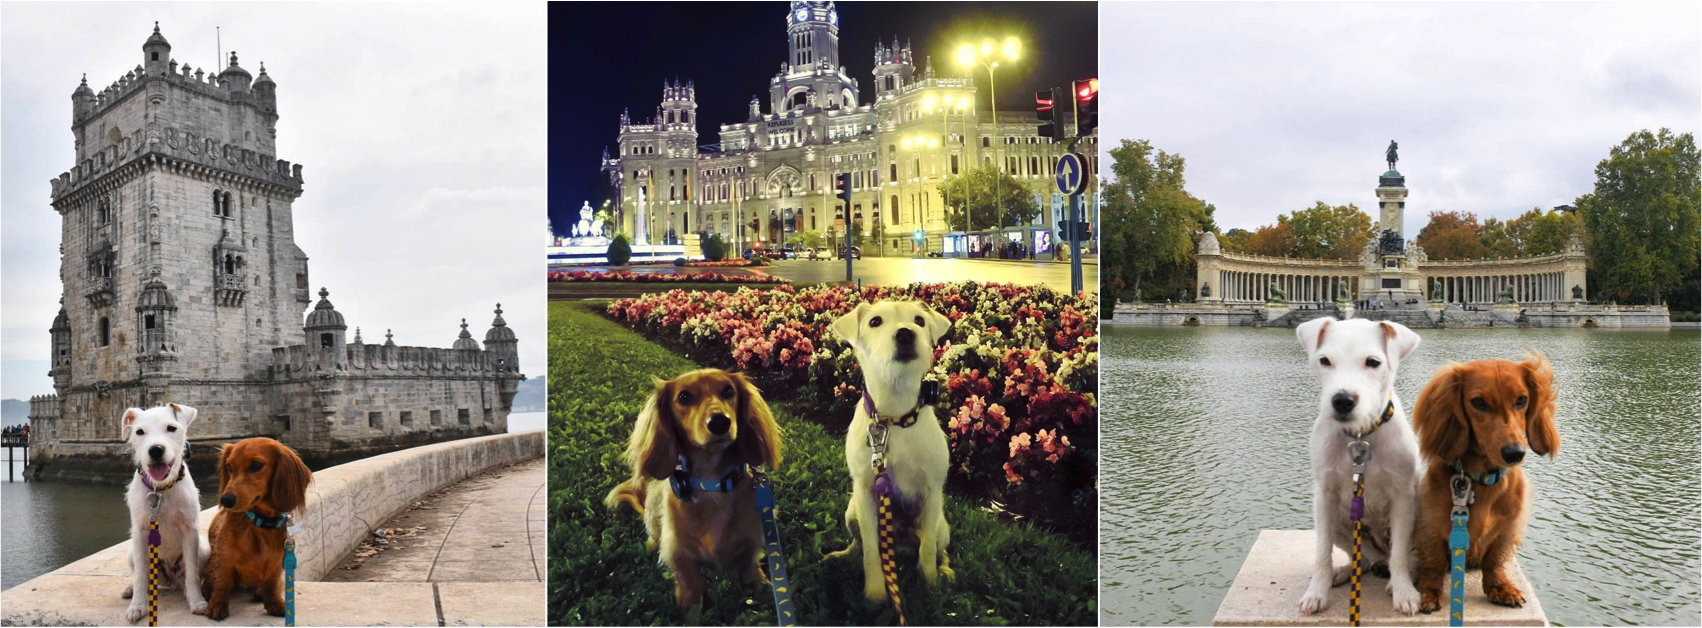 Os cachorrinhos pop's do Instagram, Django e Chloe, em uma viagem pela Europa